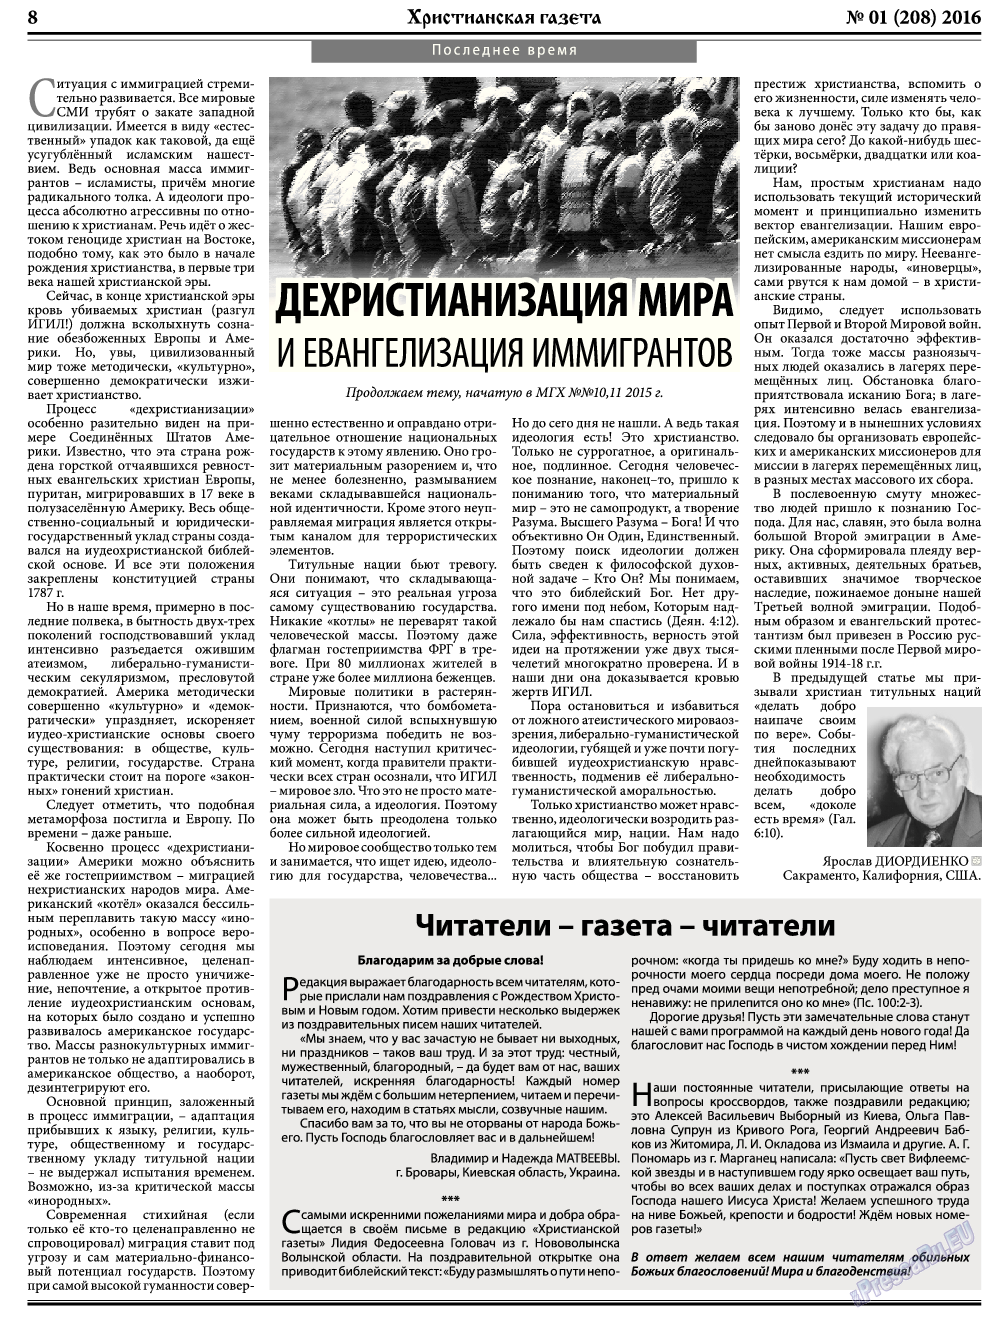 Христианская газета, газета. 2016 №1 стр.8